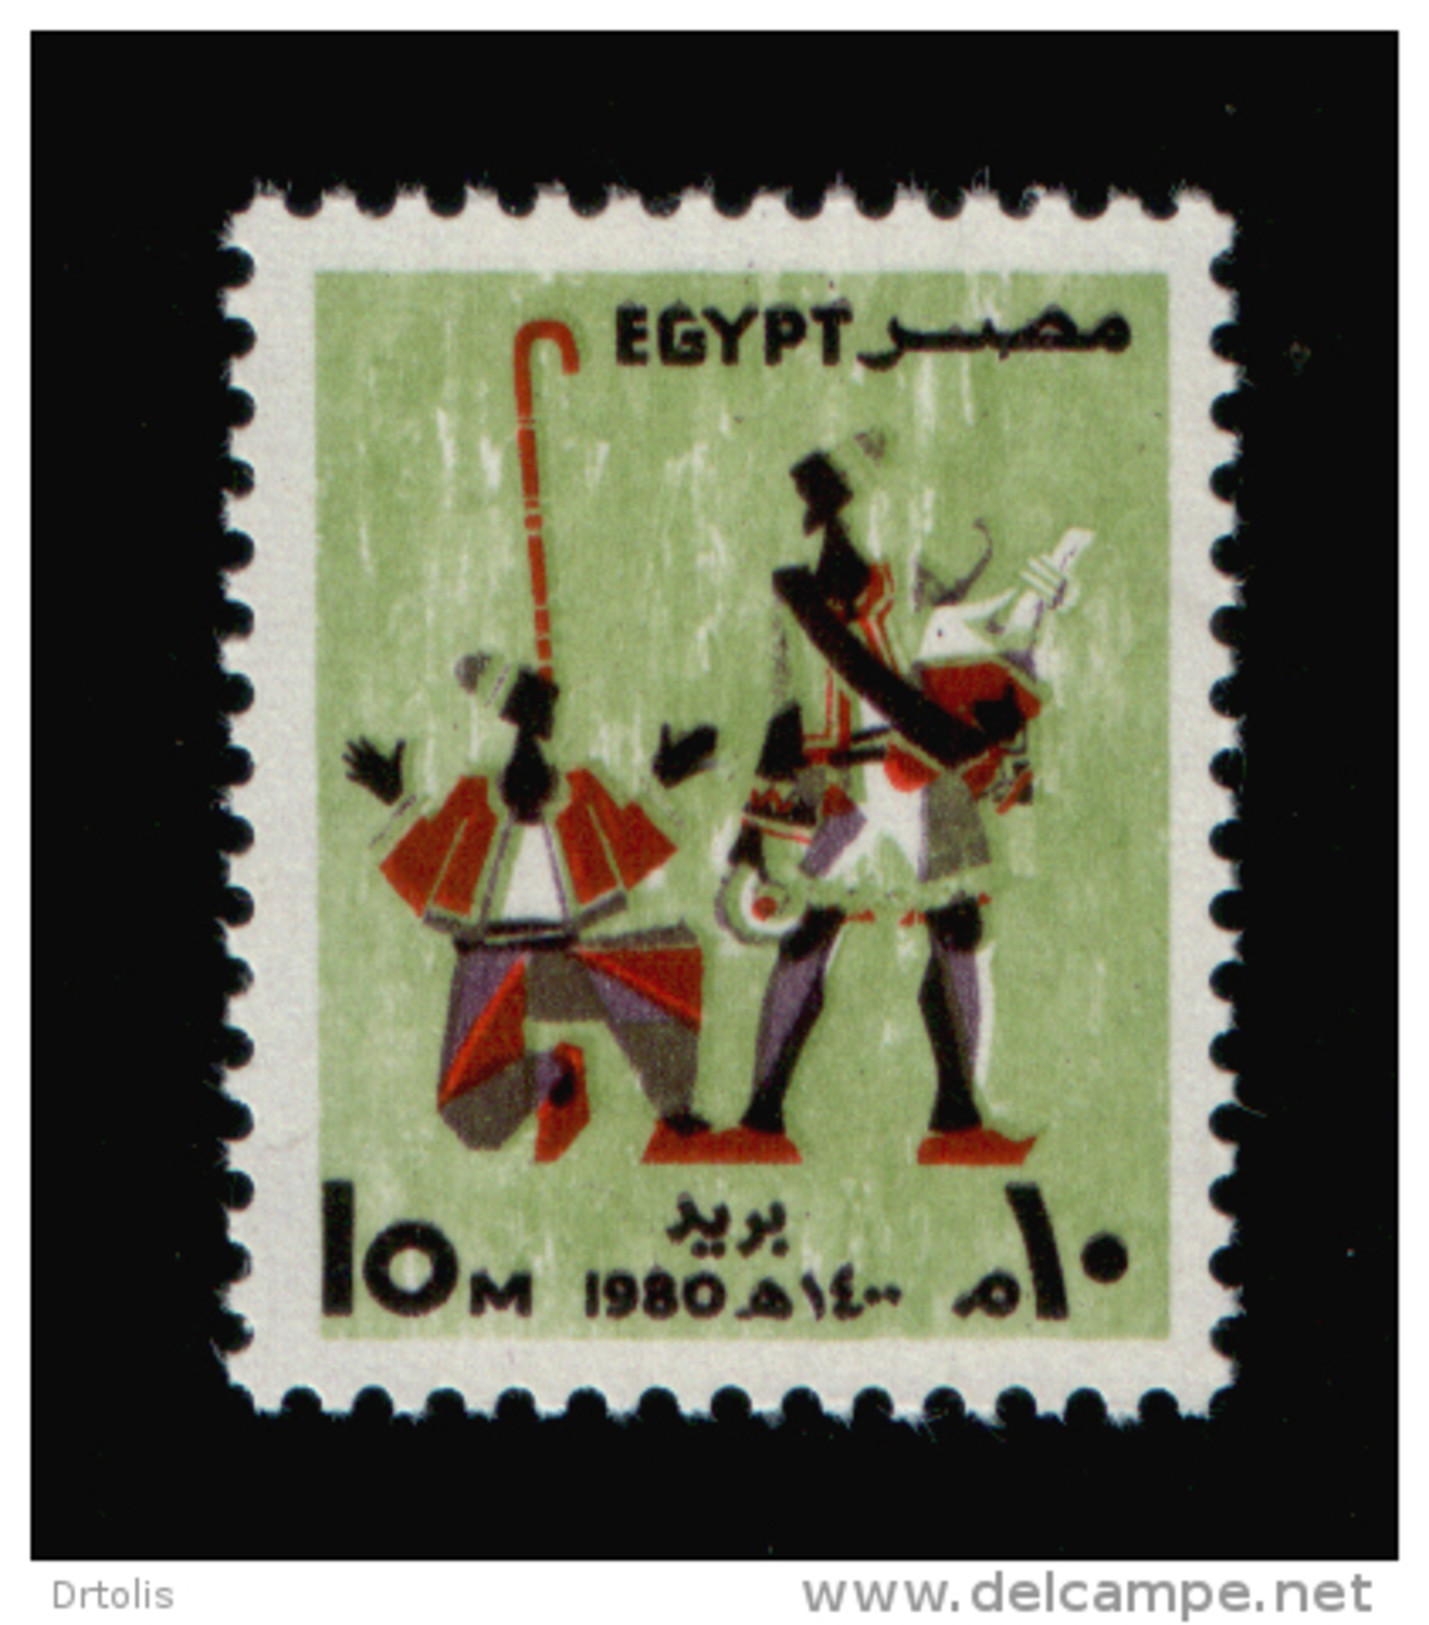 EGYPT / 1980 / FESTIVALS / ERKSOUS ( LICORICE ) SELLER / NAKRAZAN PLAYER / MNH / VF - Neufs